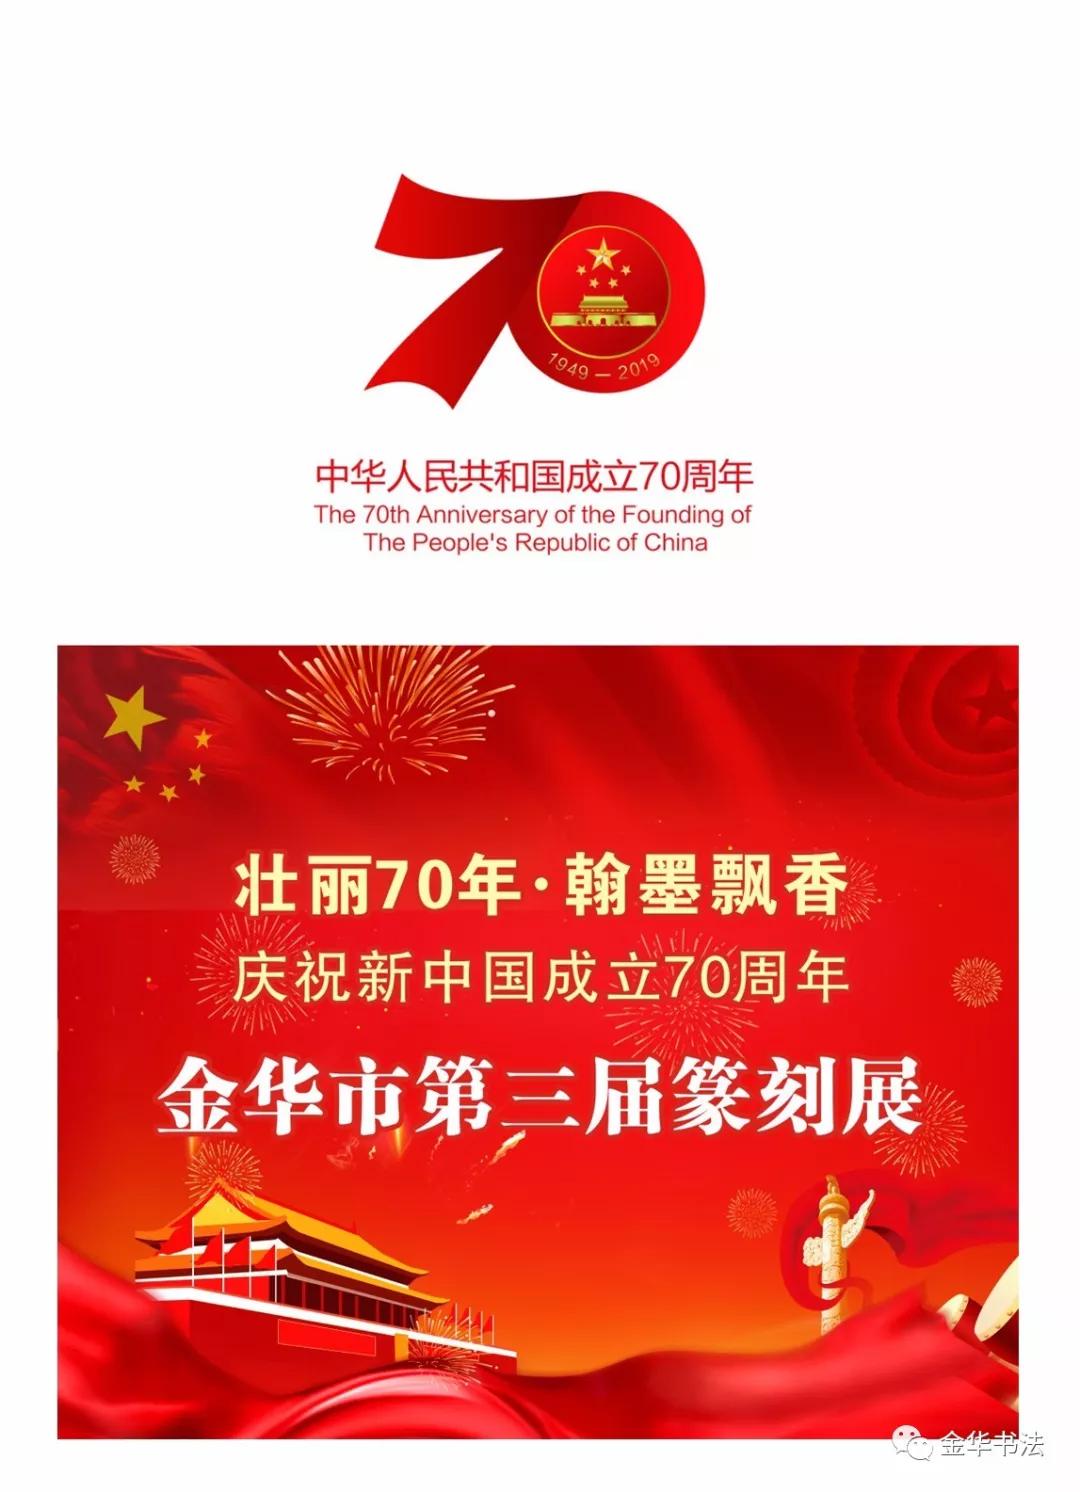 壮丽70年·翰墨飘香,庆祝新中国成立70周年——金华市第三届篆刻展